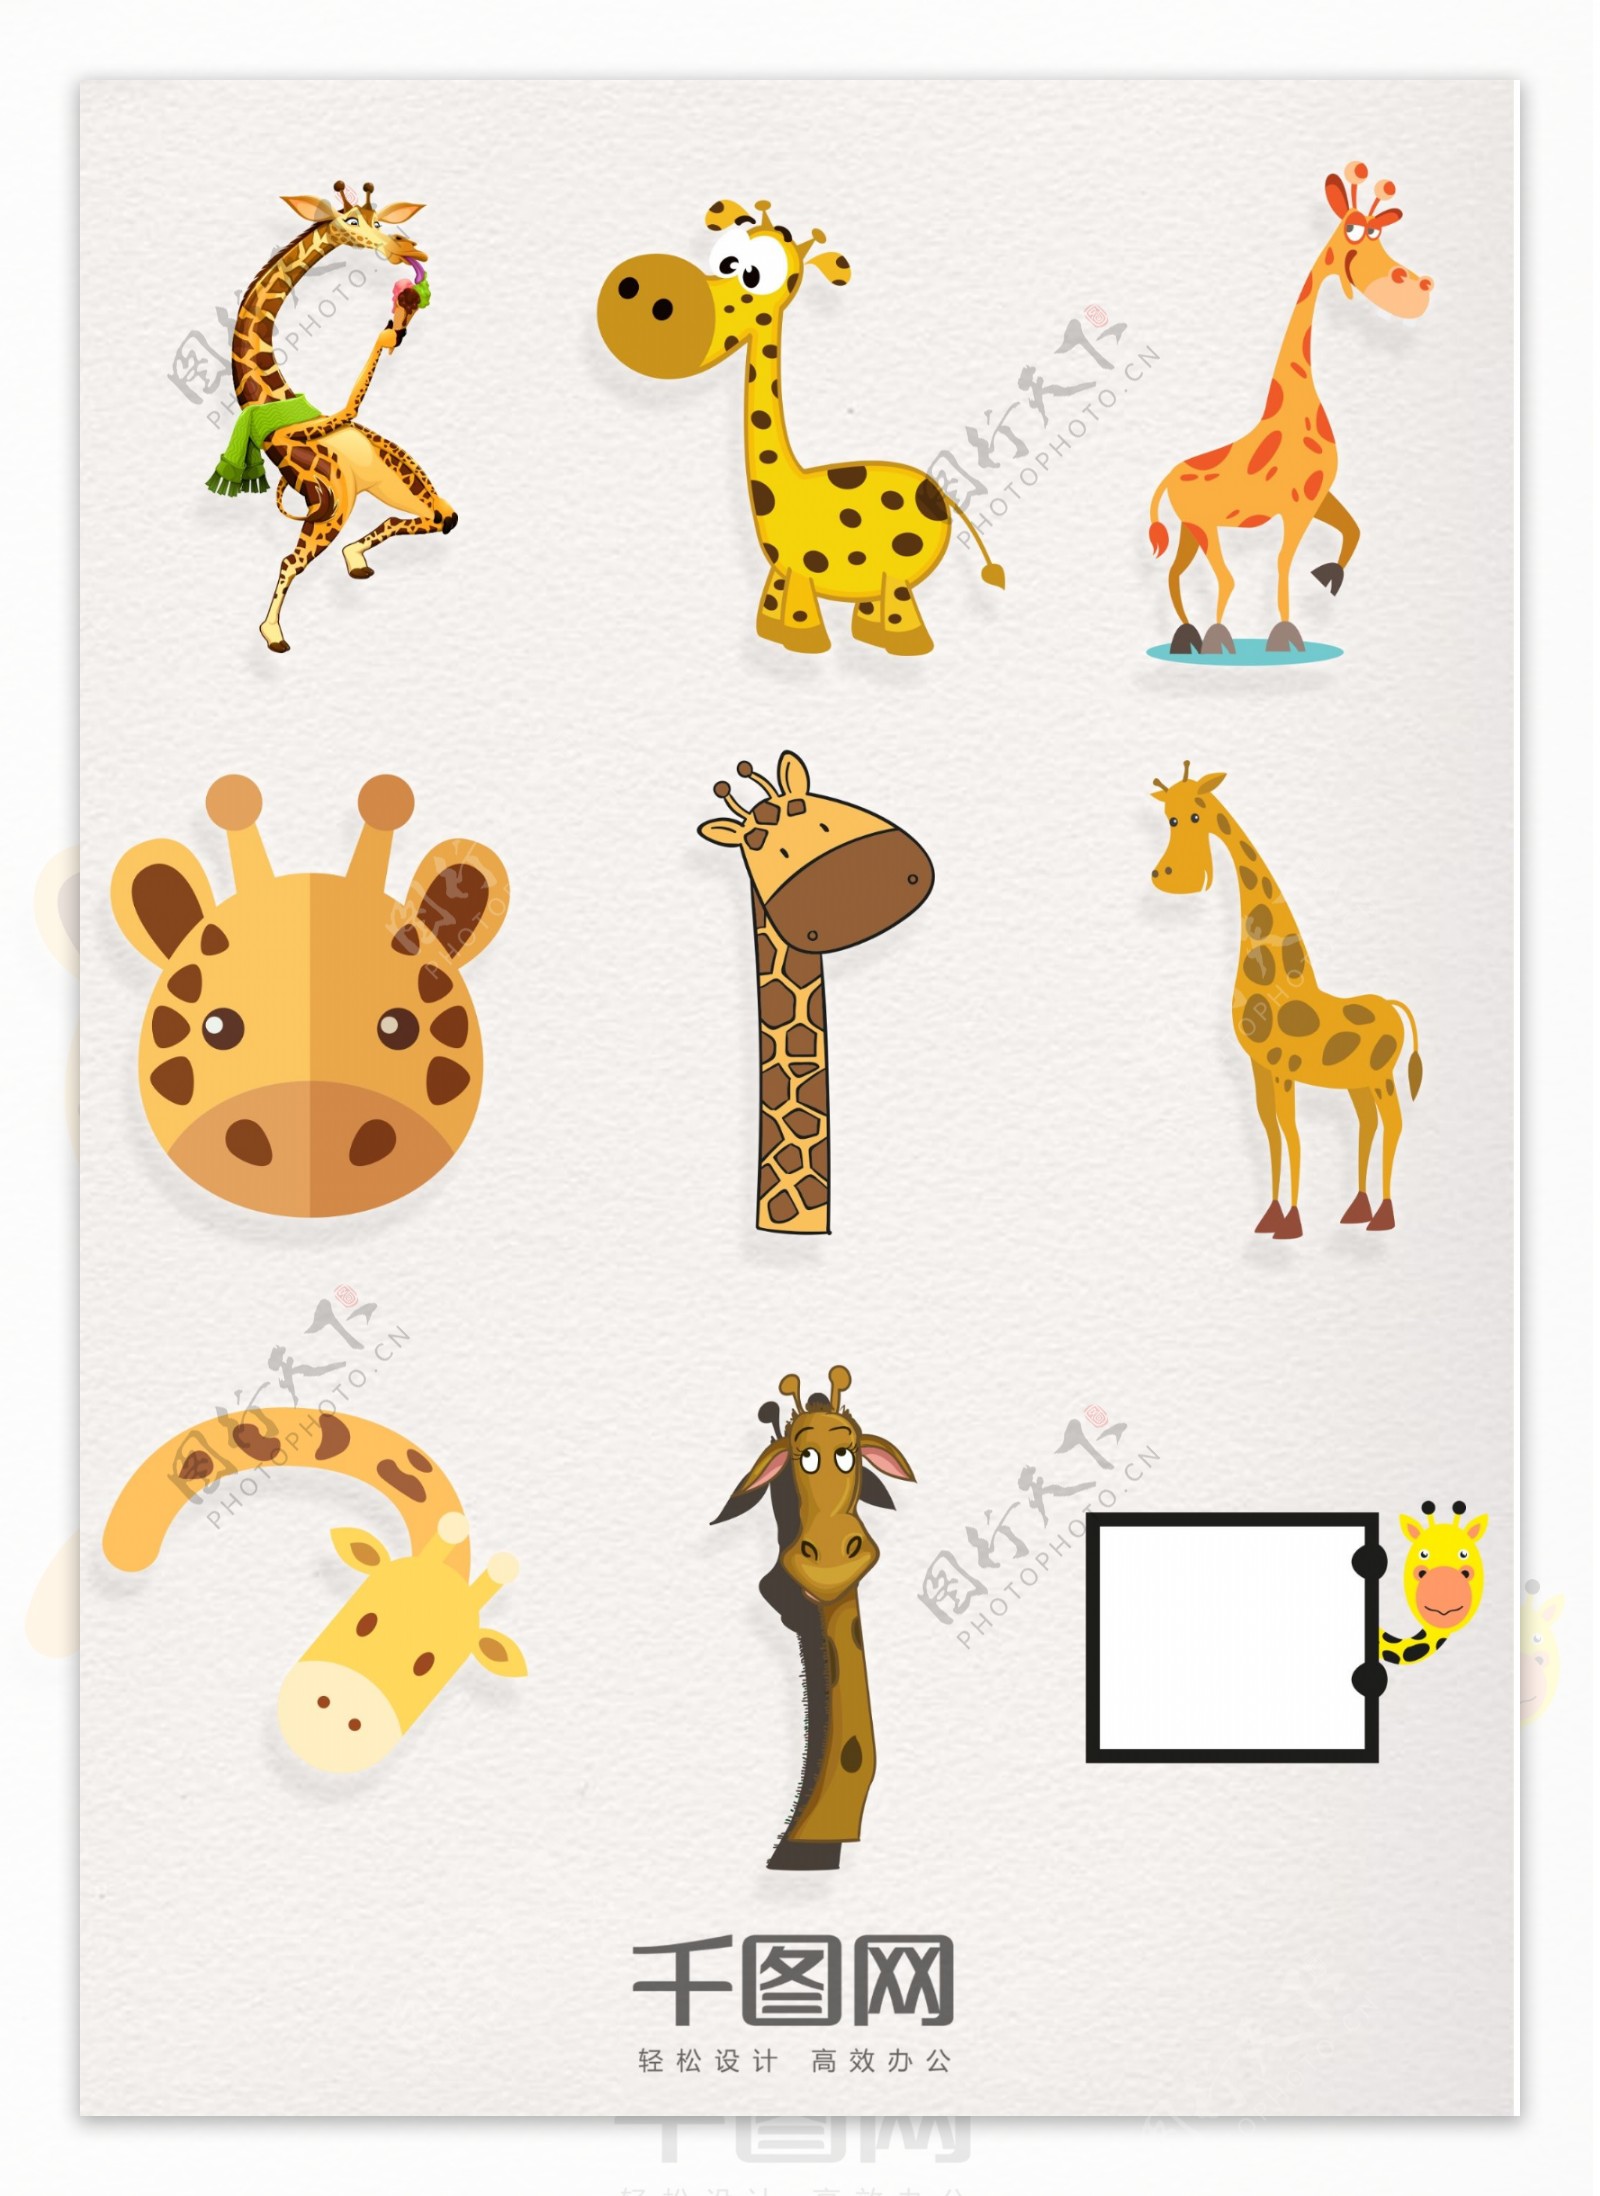 9款可爱卡通长颈鹿素材